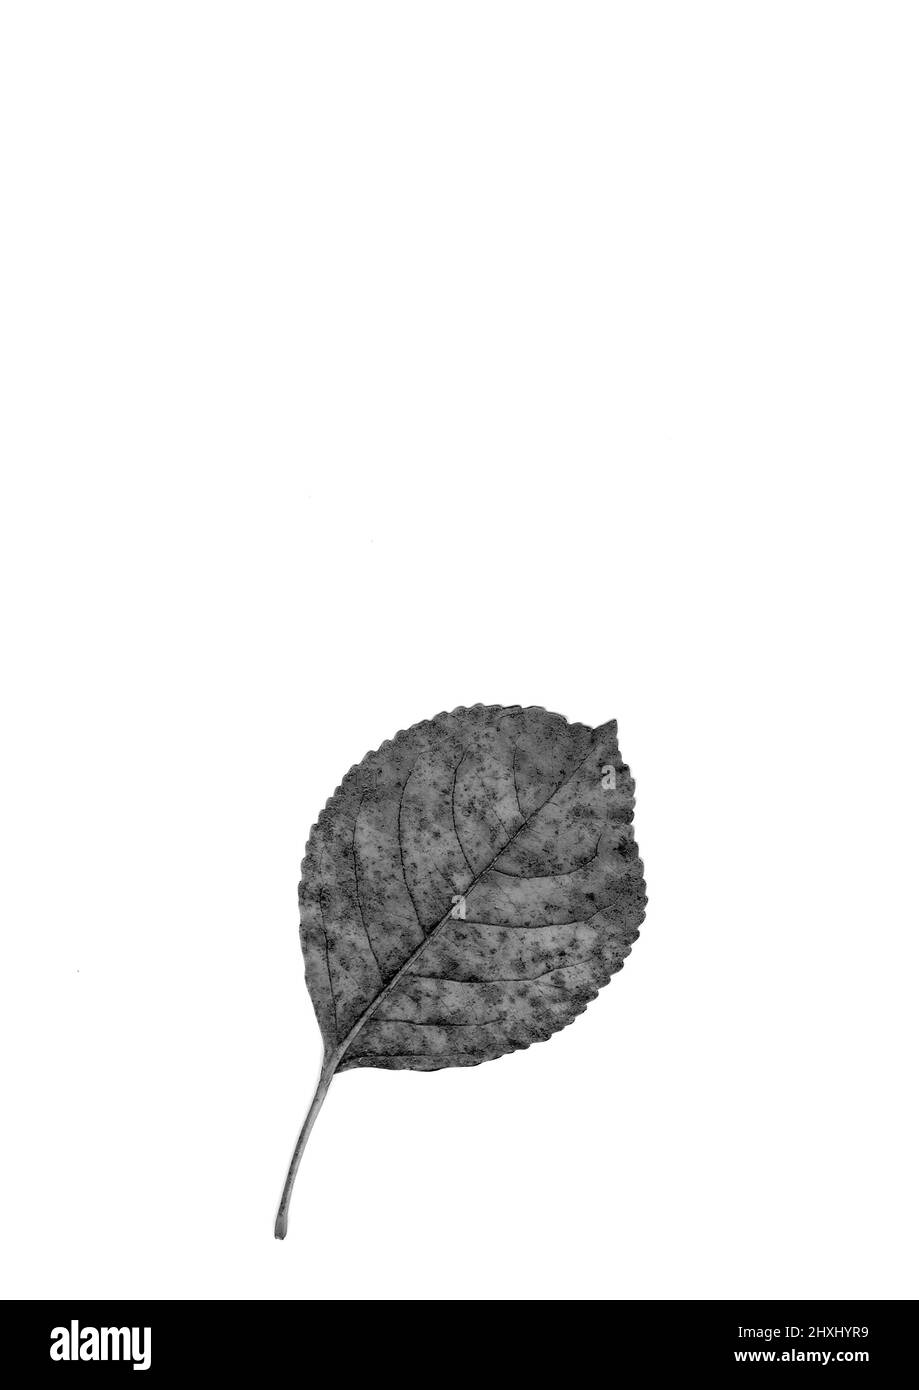 Leaf skeleton in black & white. Stock Photo